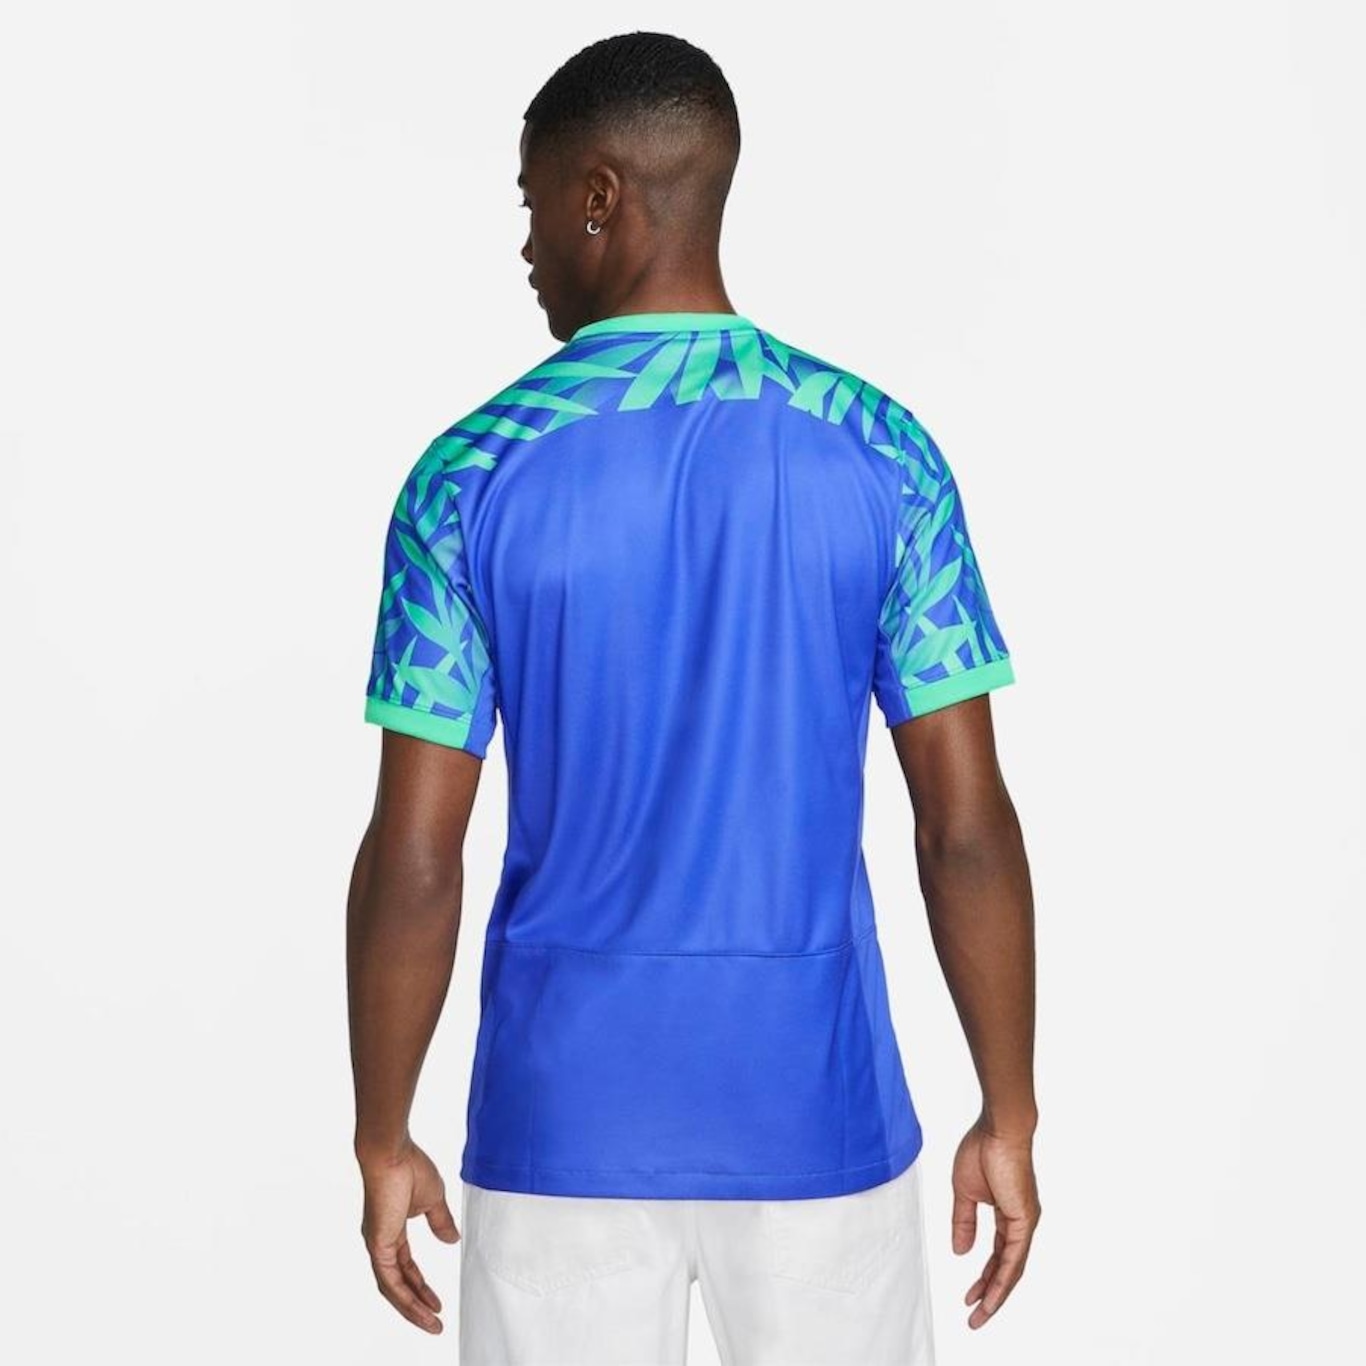 Camisa do Brasil Nike I 2023/24 Torcedor Pro - Infantil em Promoção